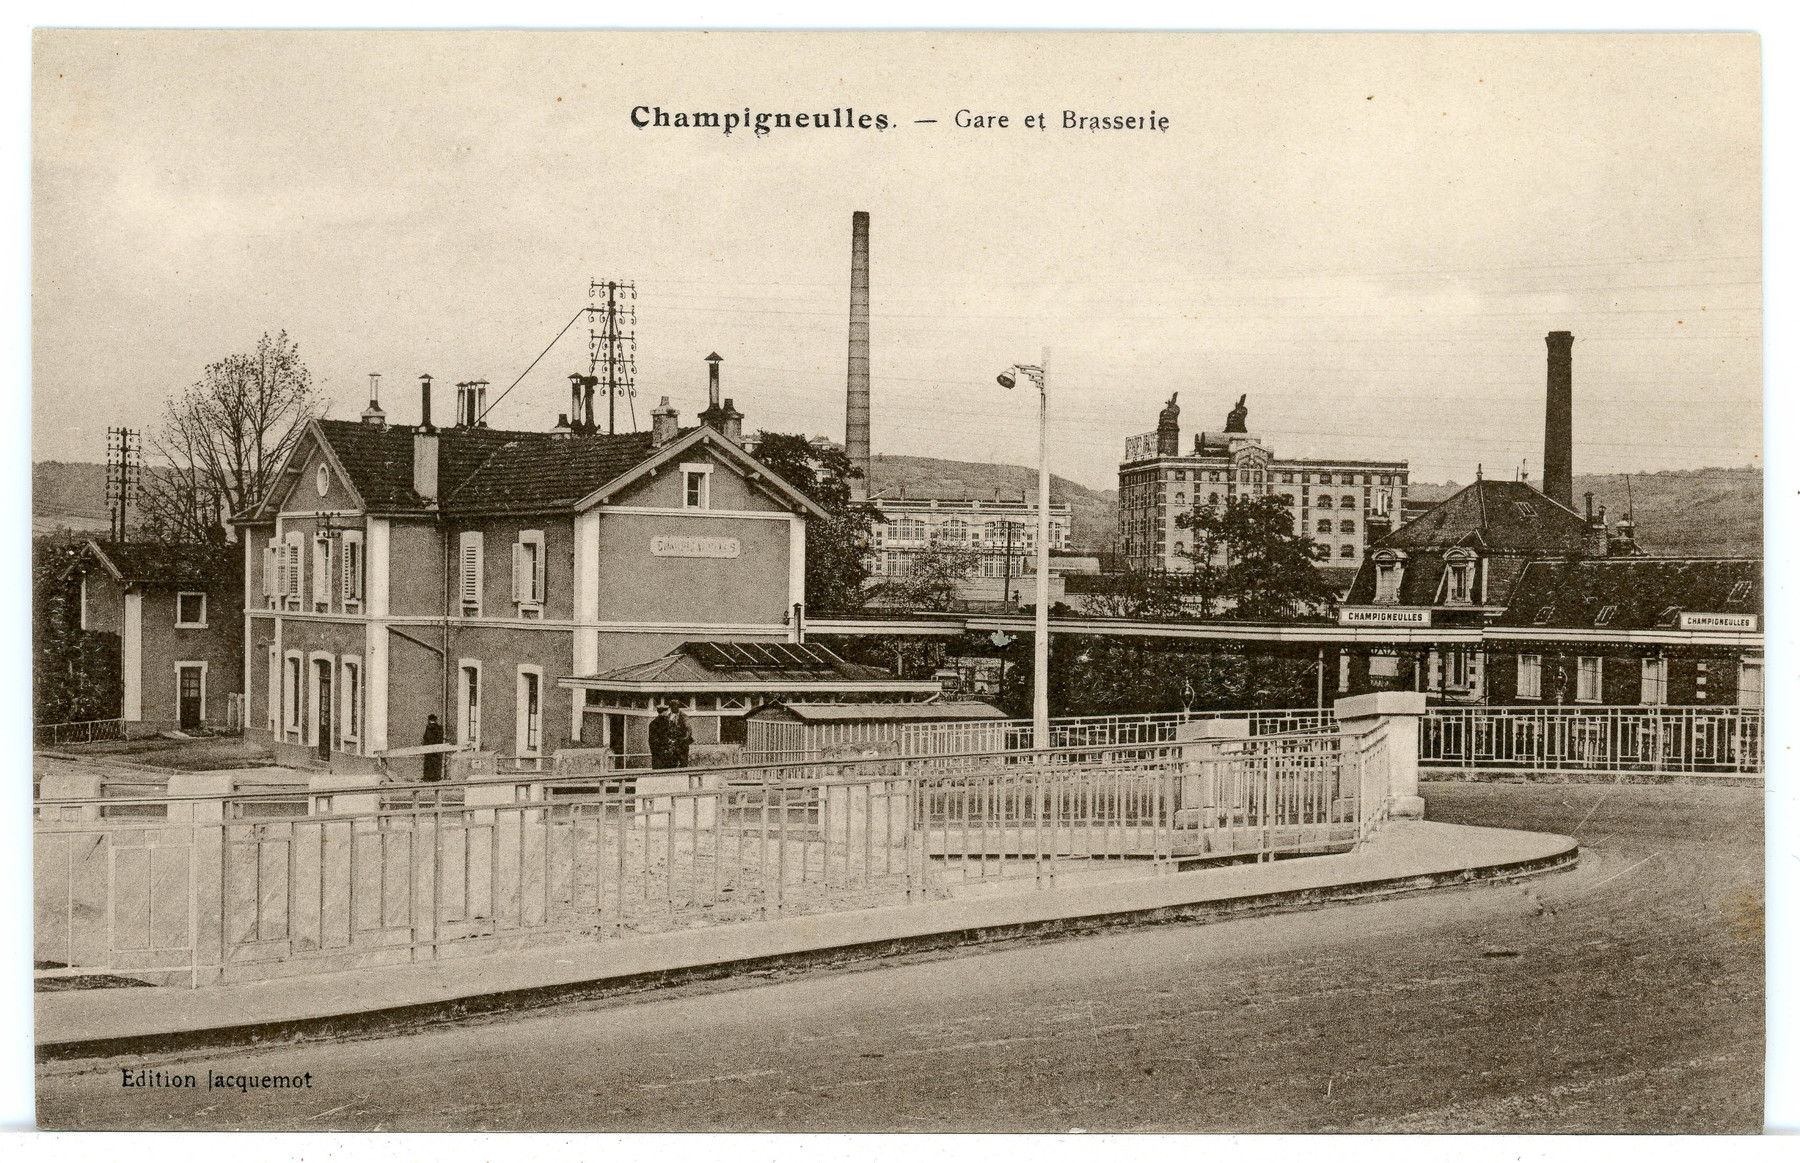 Contenu du Champigneulles - Gare et Brasserie